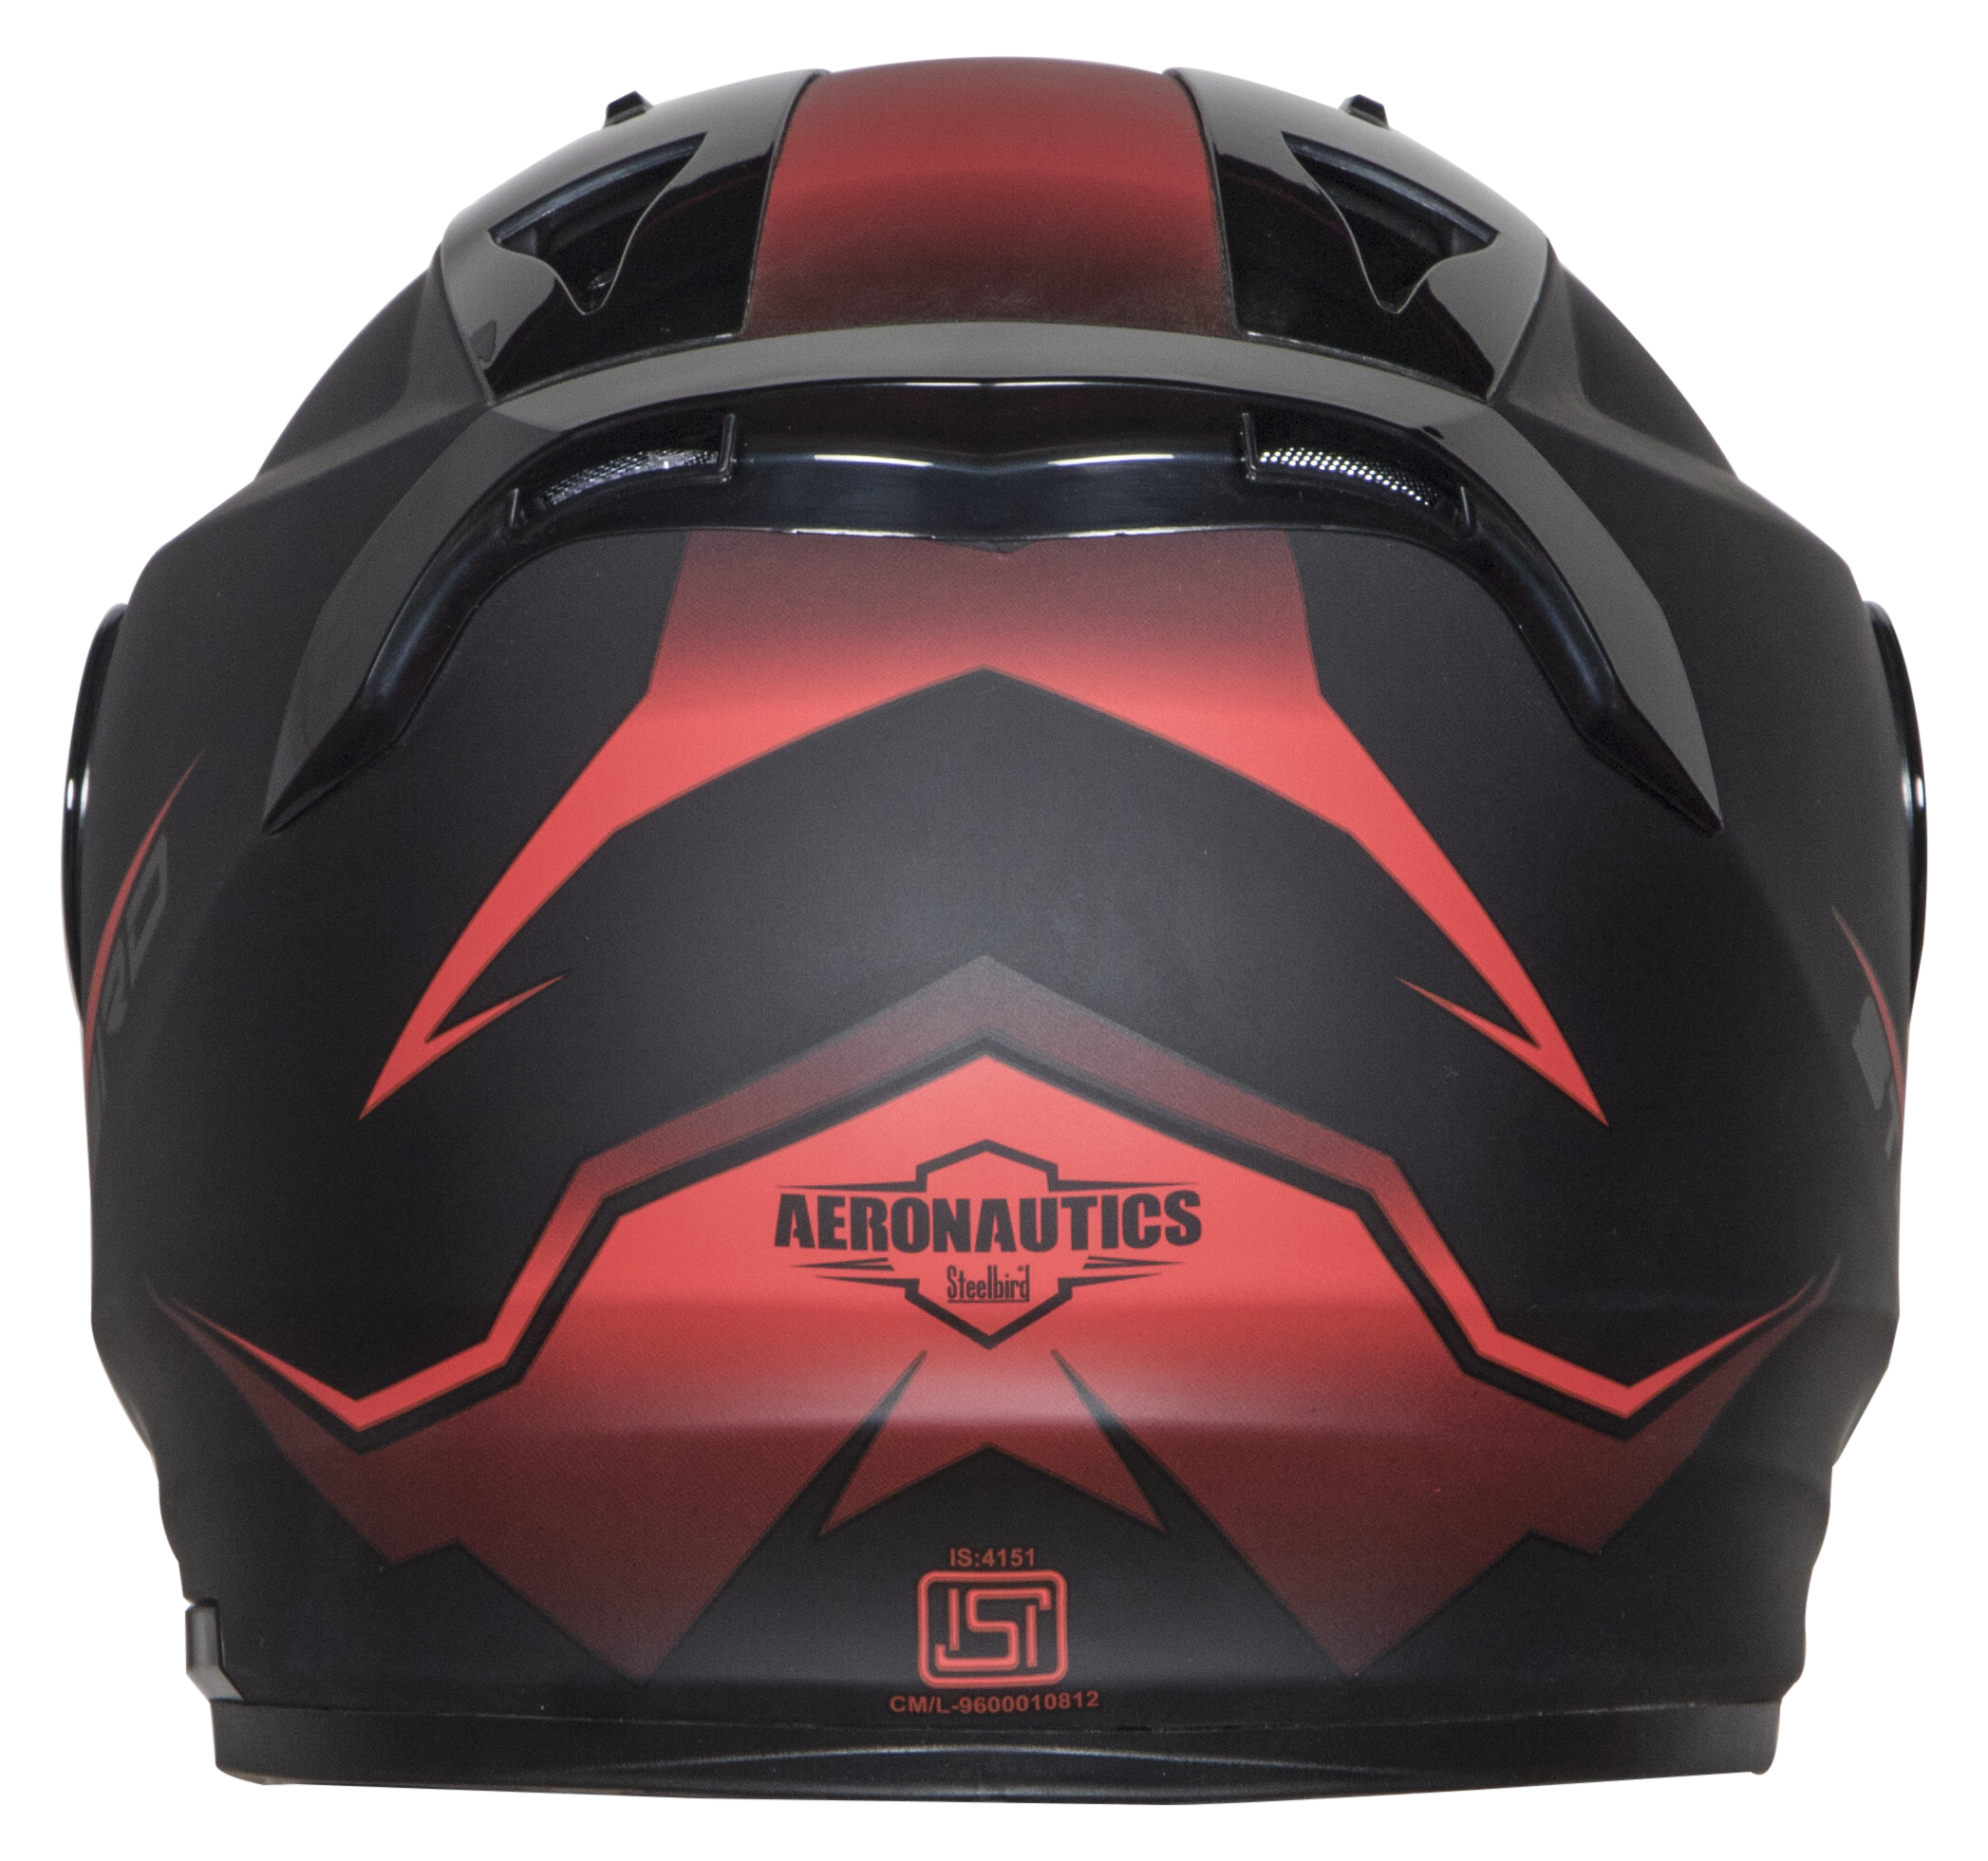 Steelbird SA-1 Whif ISI Certified Full Face Helmet (Matt Black Red With Chrome Gold Visor)